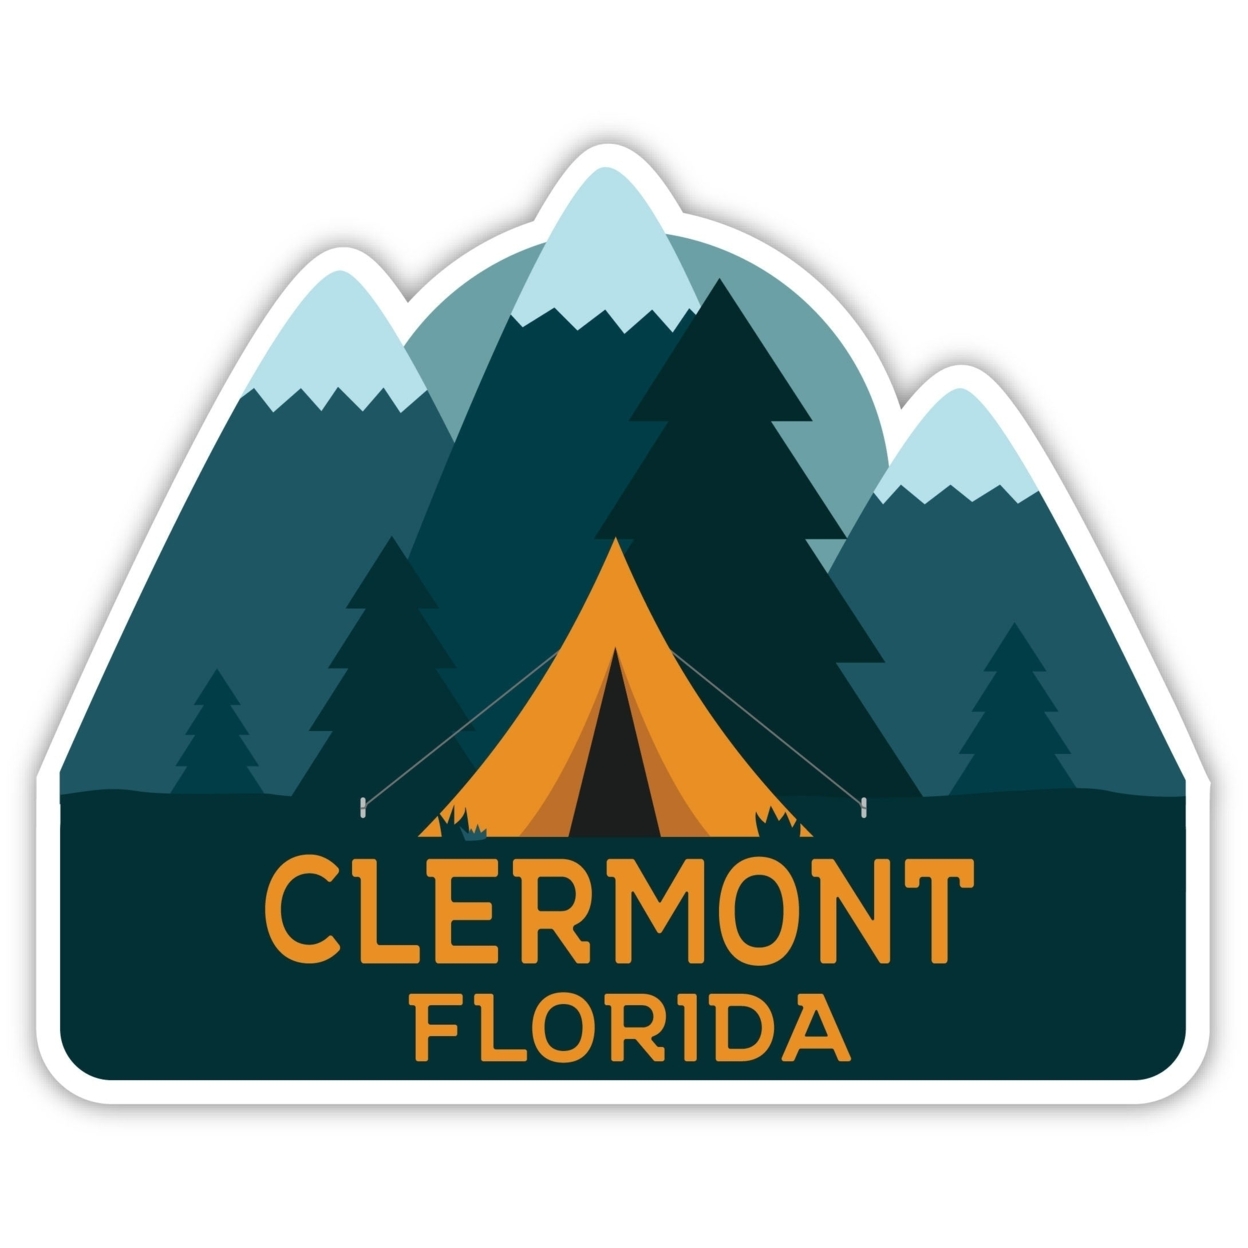 Clermont Florida Souvenir Decorative Stickers (Choose Theme And Size) - Single Unit, 6-Inch, Tent